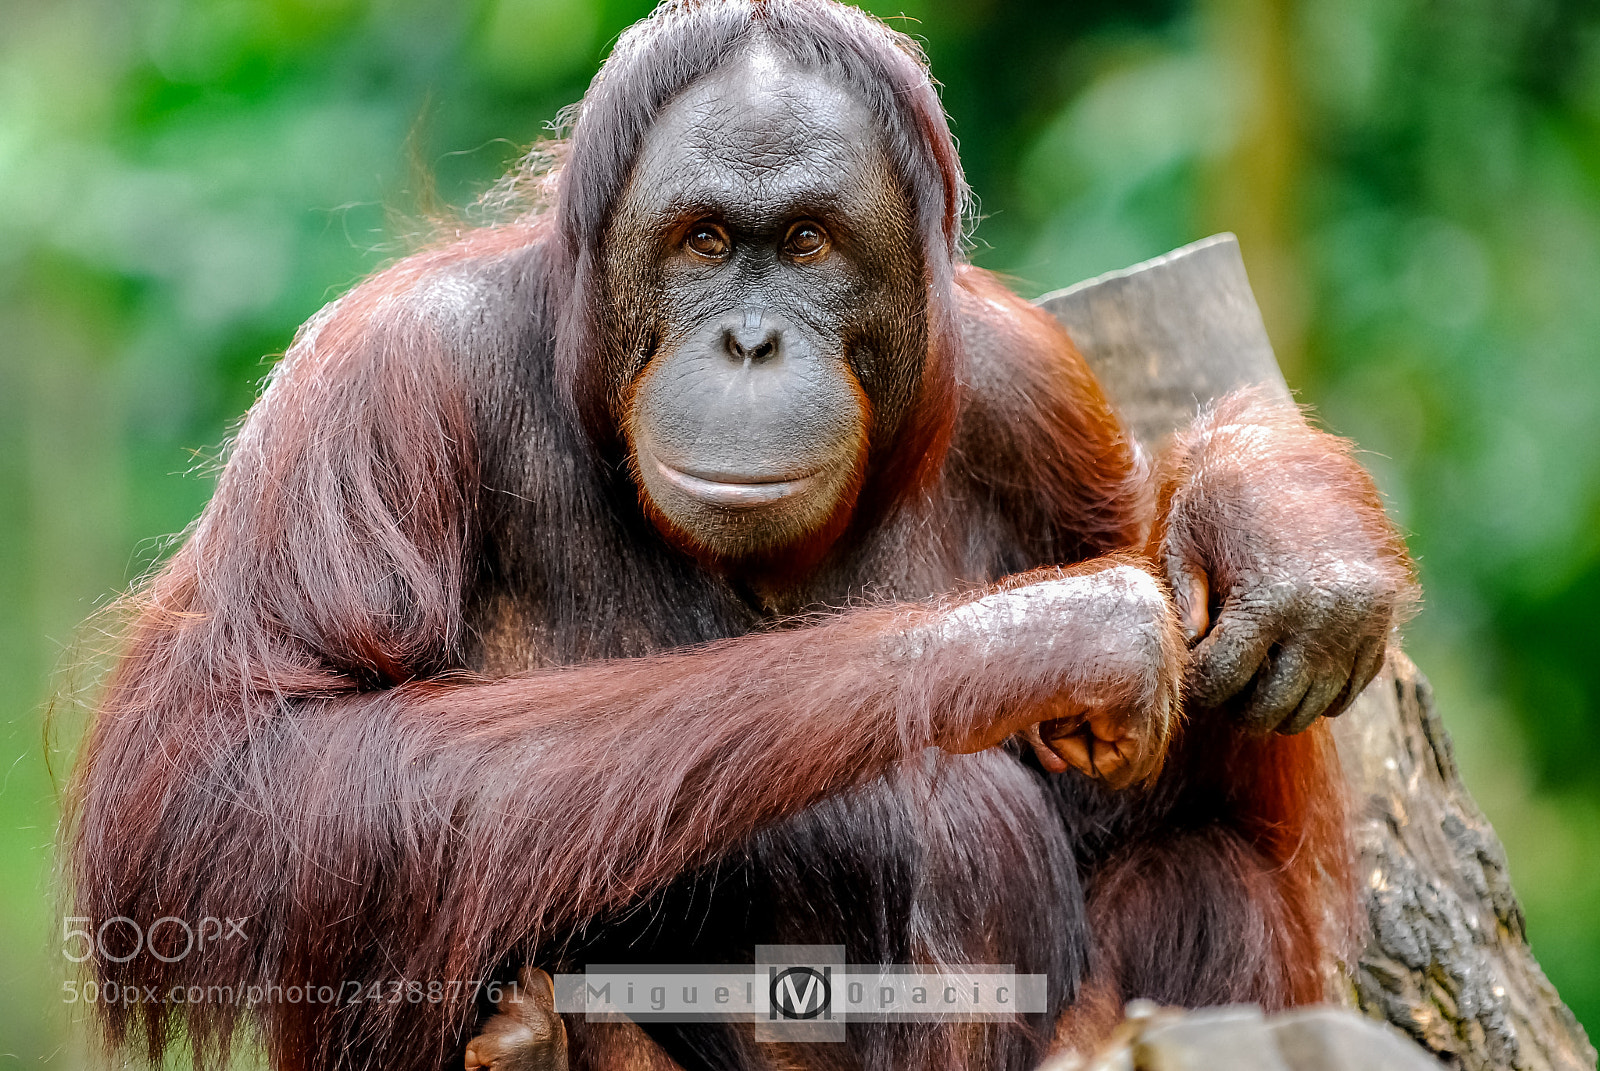 Nikon D200 sample photo. Orangutan photography